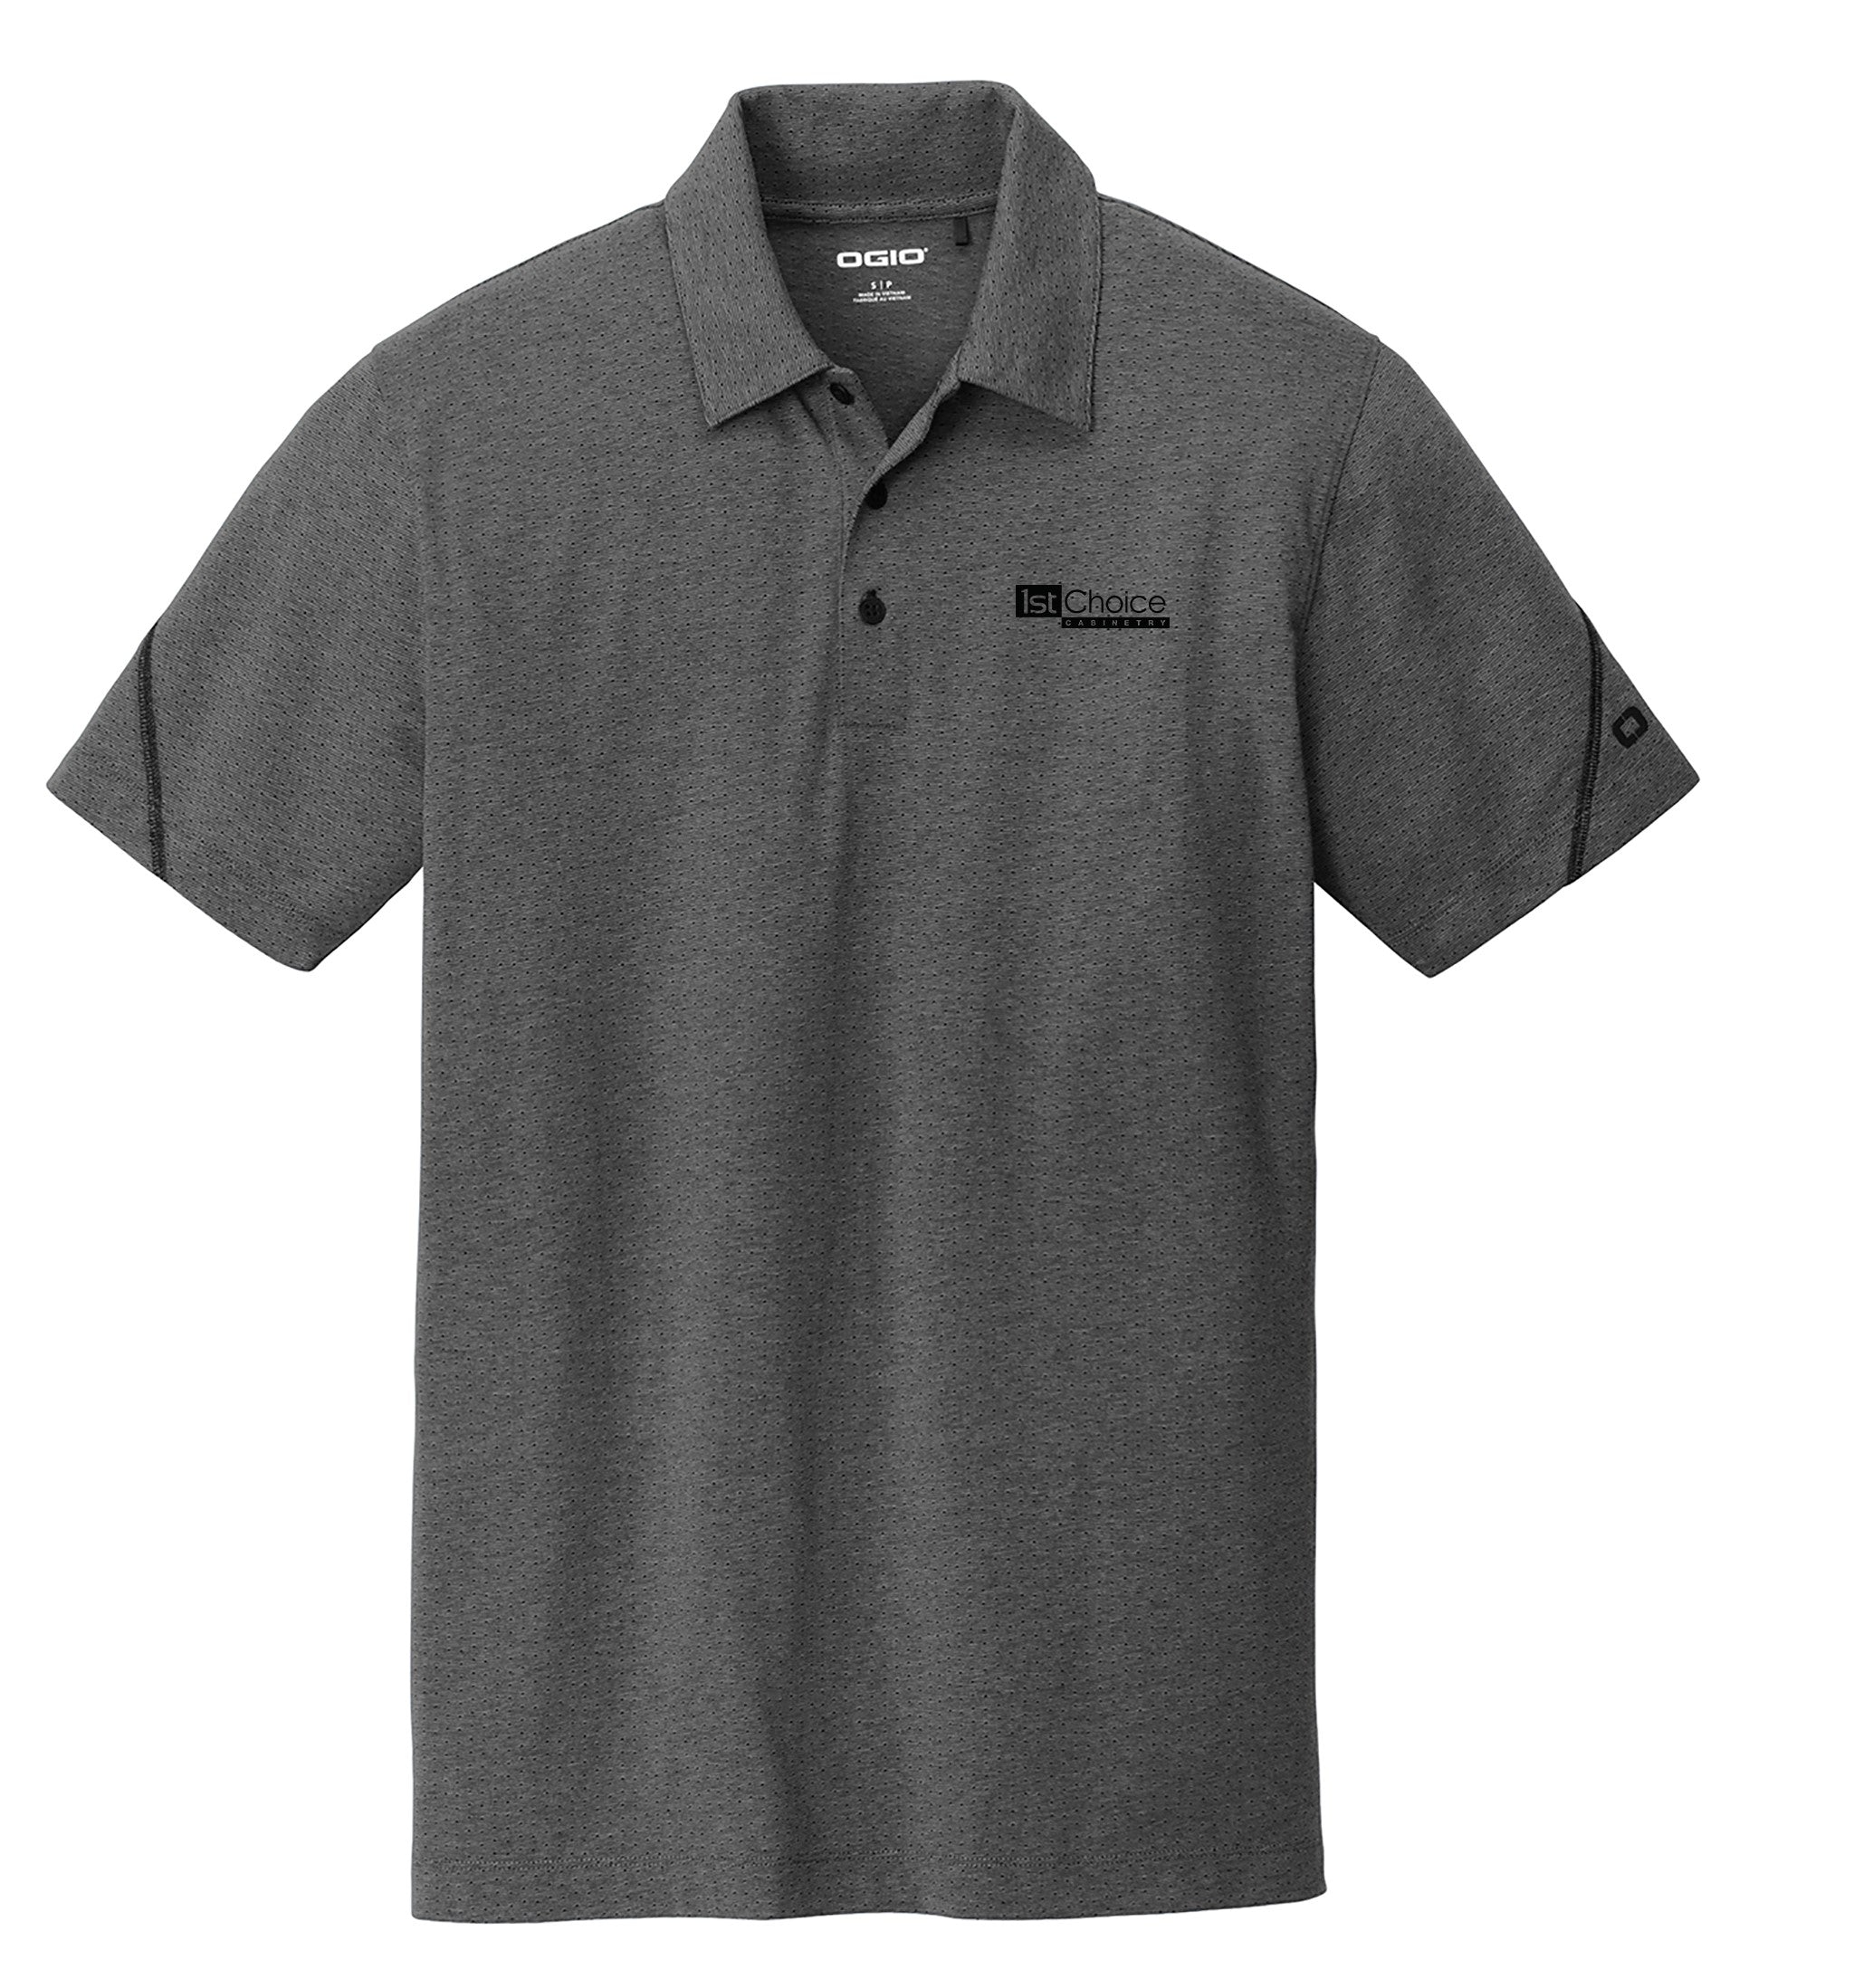 Men's OGIO Thread Polo Shirt